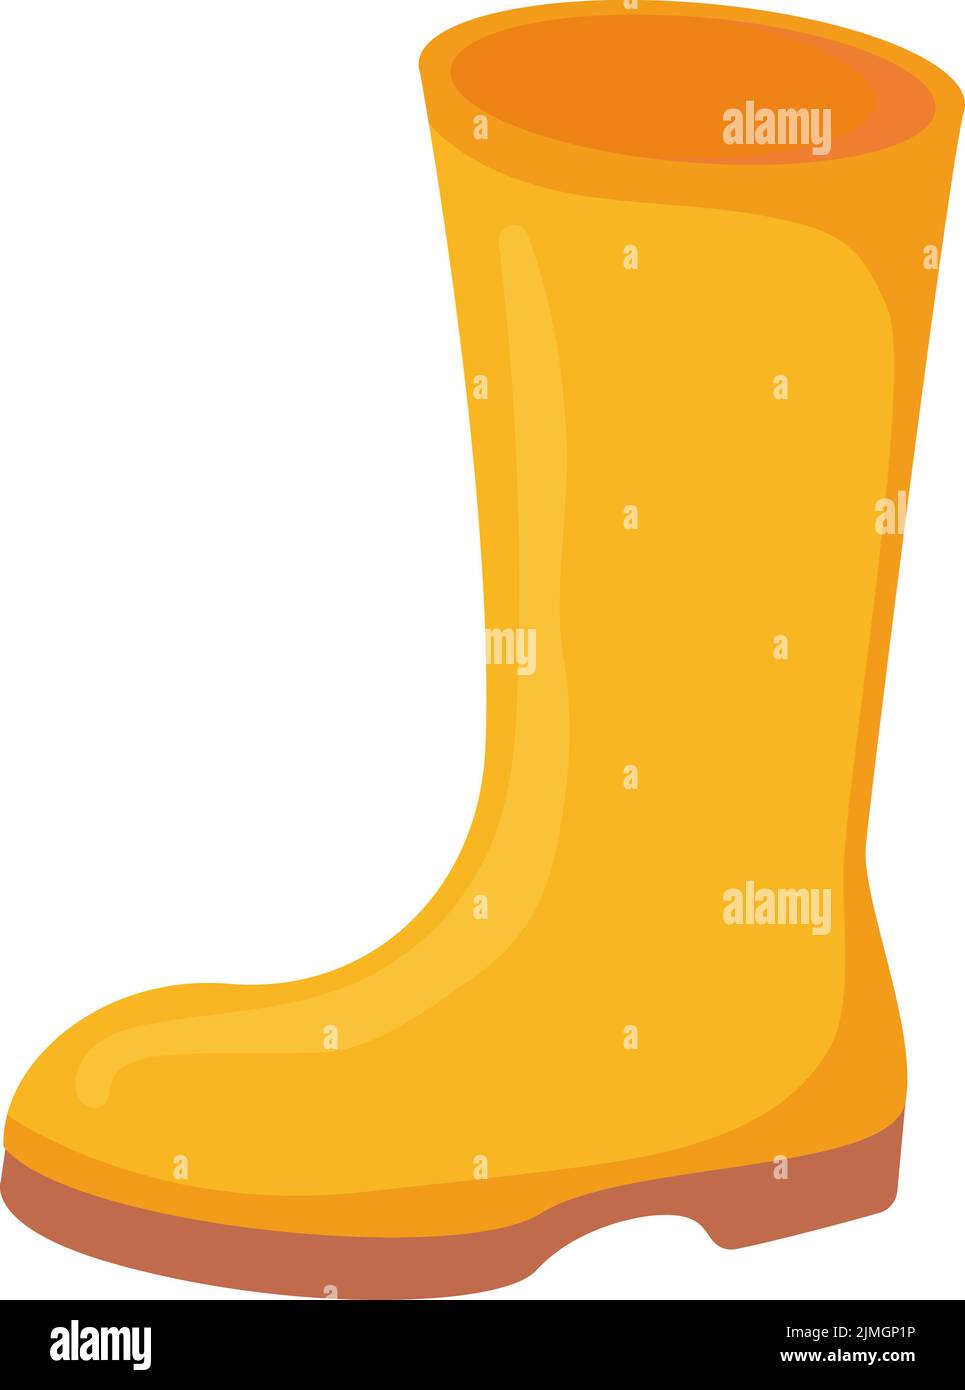 Gelber Gummistiefel oder -Schuh in Herbstfarbe. Gartenarbeit regnerischen Tuch Konzept. Stock Vektor-Illustrationen isoliert auf weißem Hintergrund. Stock Vektor